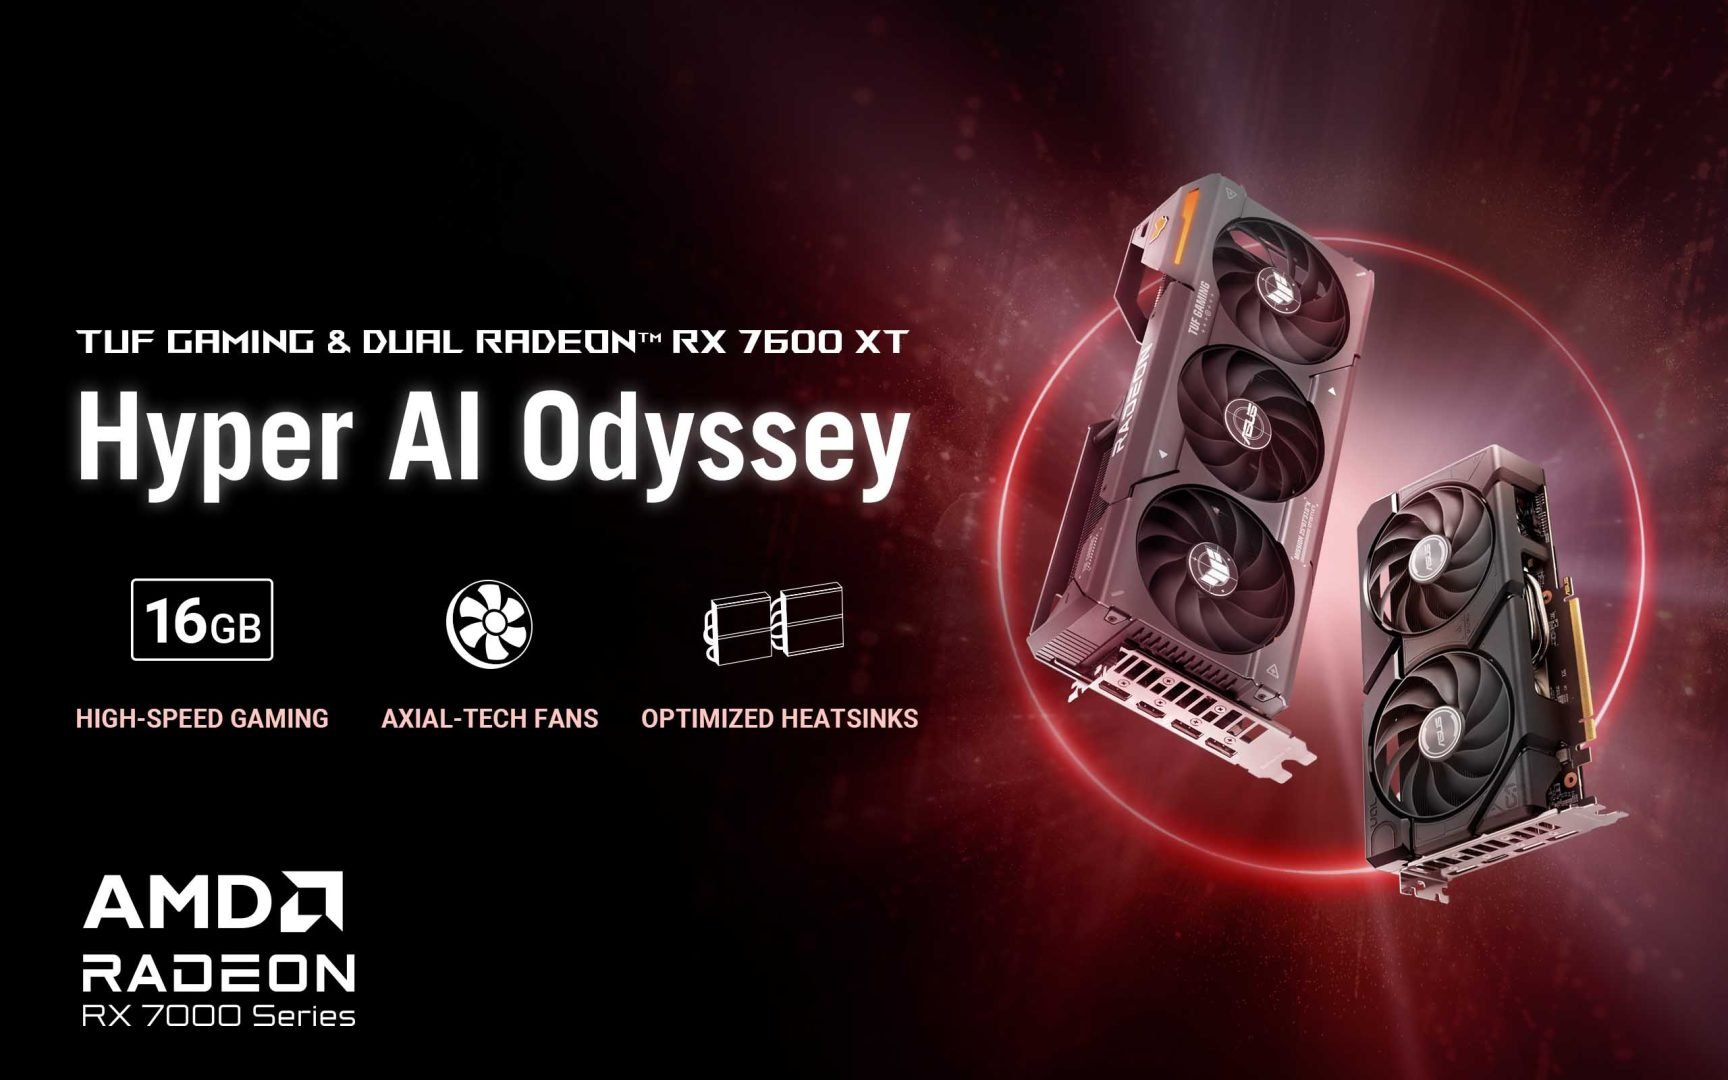 ASUS AMD Radeon RX 7600 XT ekran kartı